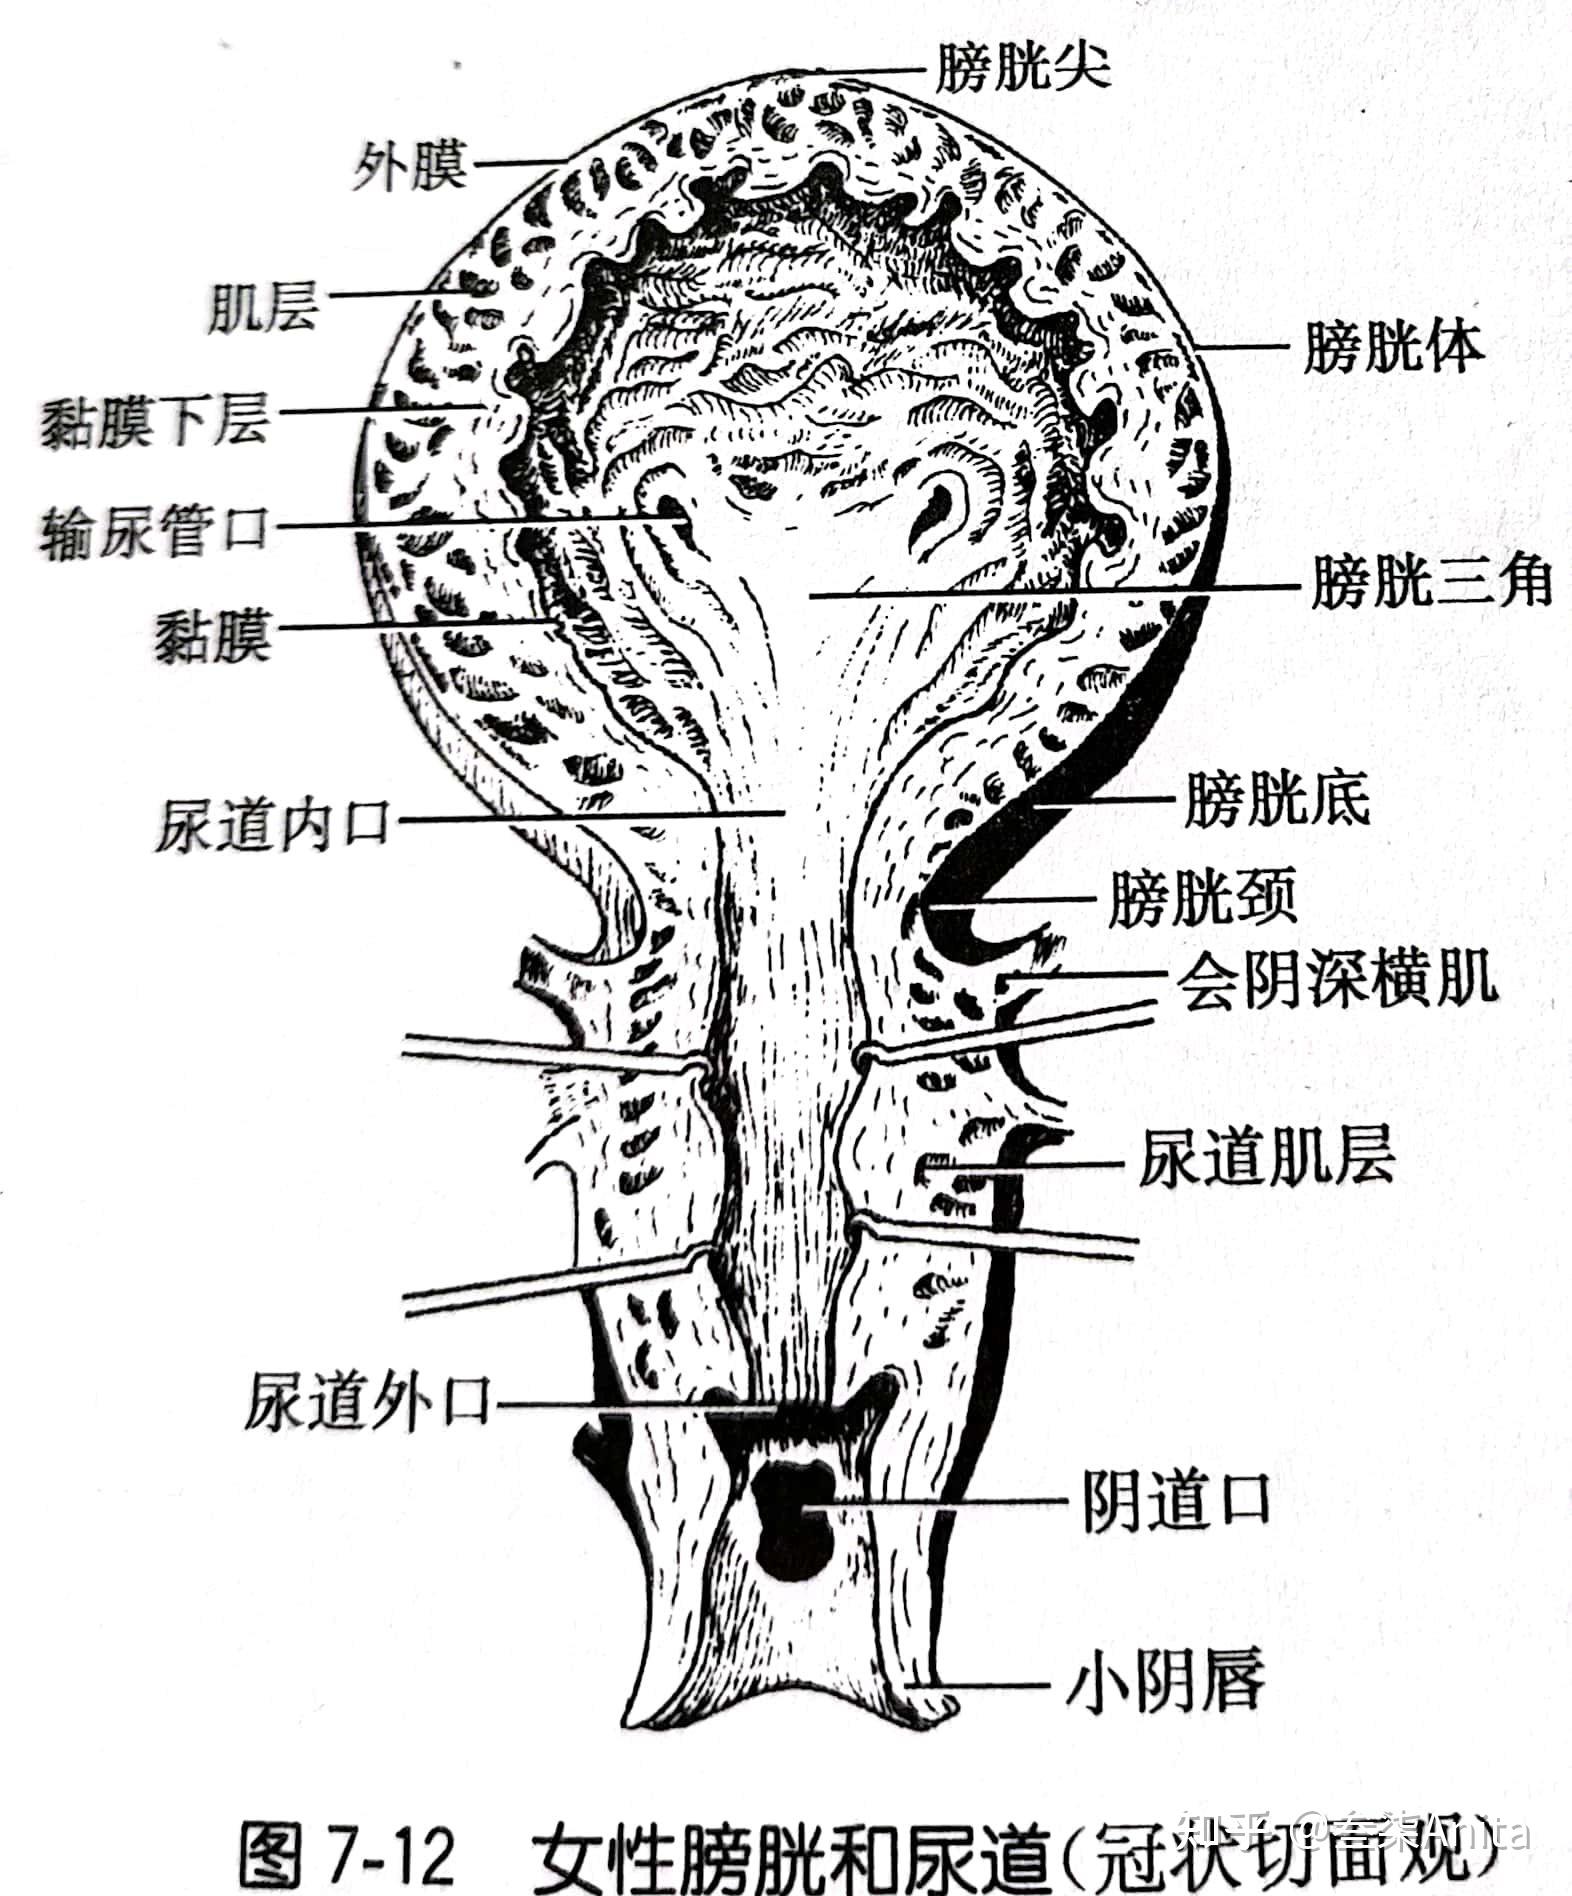 女性尿道和膀胱(冠状切面观)肾小体(nierenk02rperchen)右肾冠状